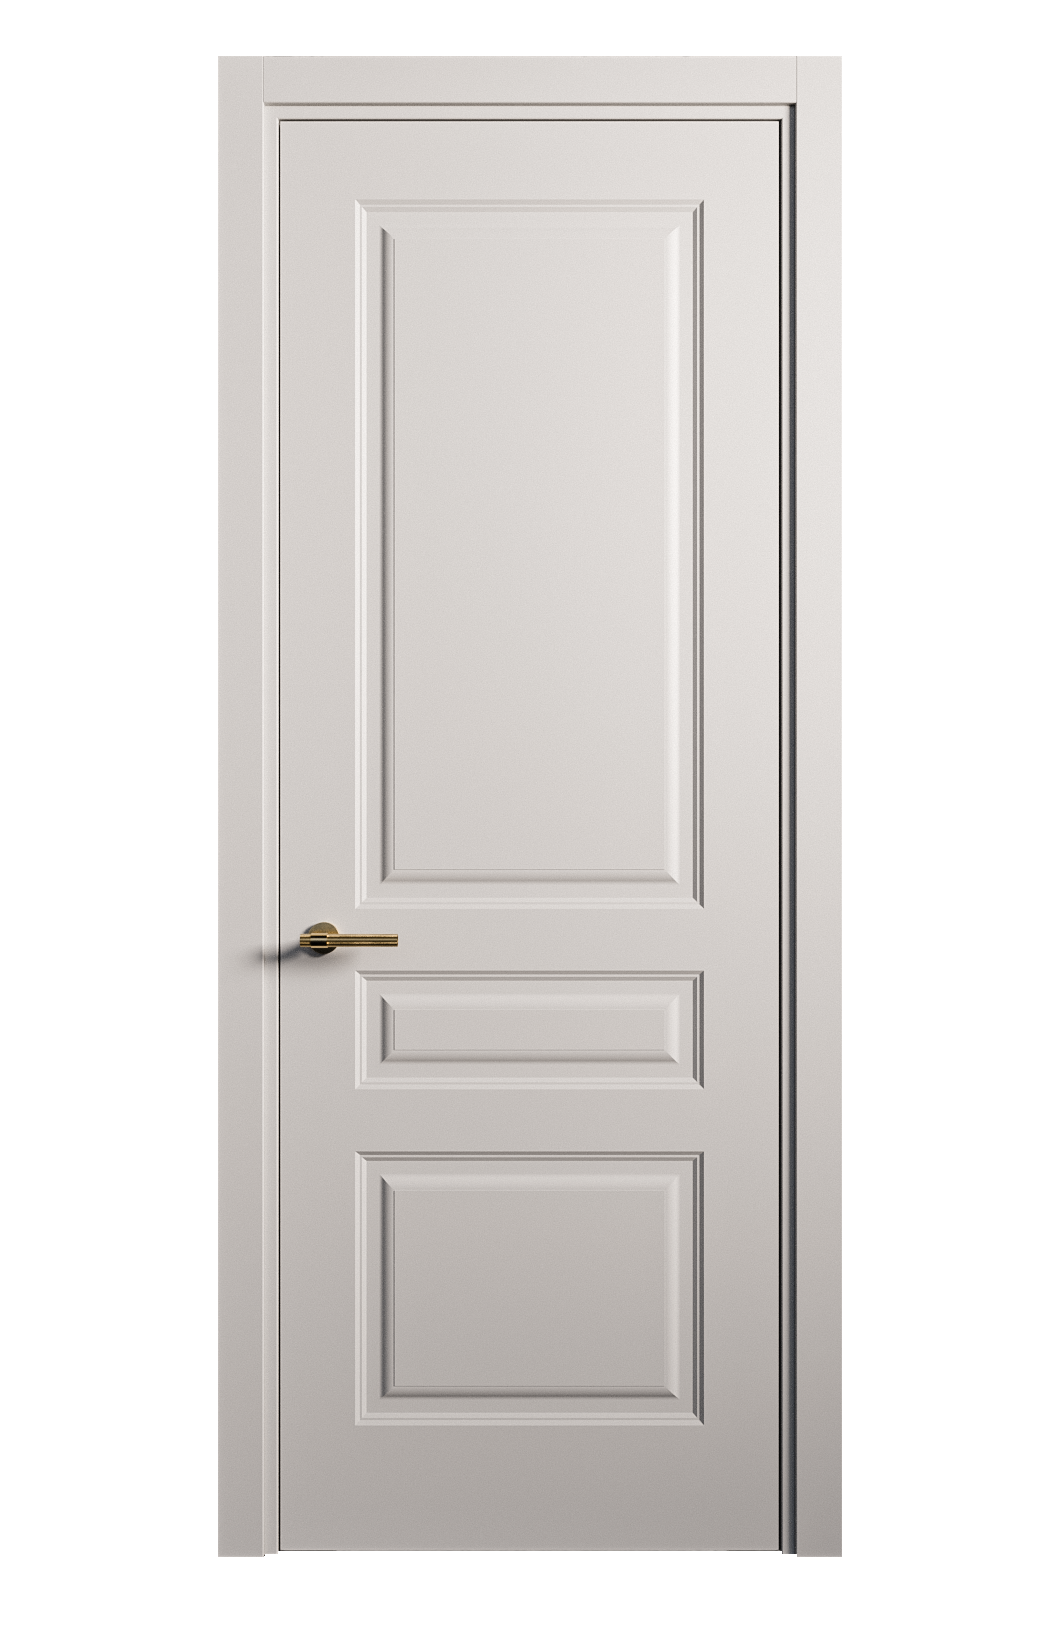 Межкомнатная дверь Вита-2 глухая эмаль ral 7047 26332